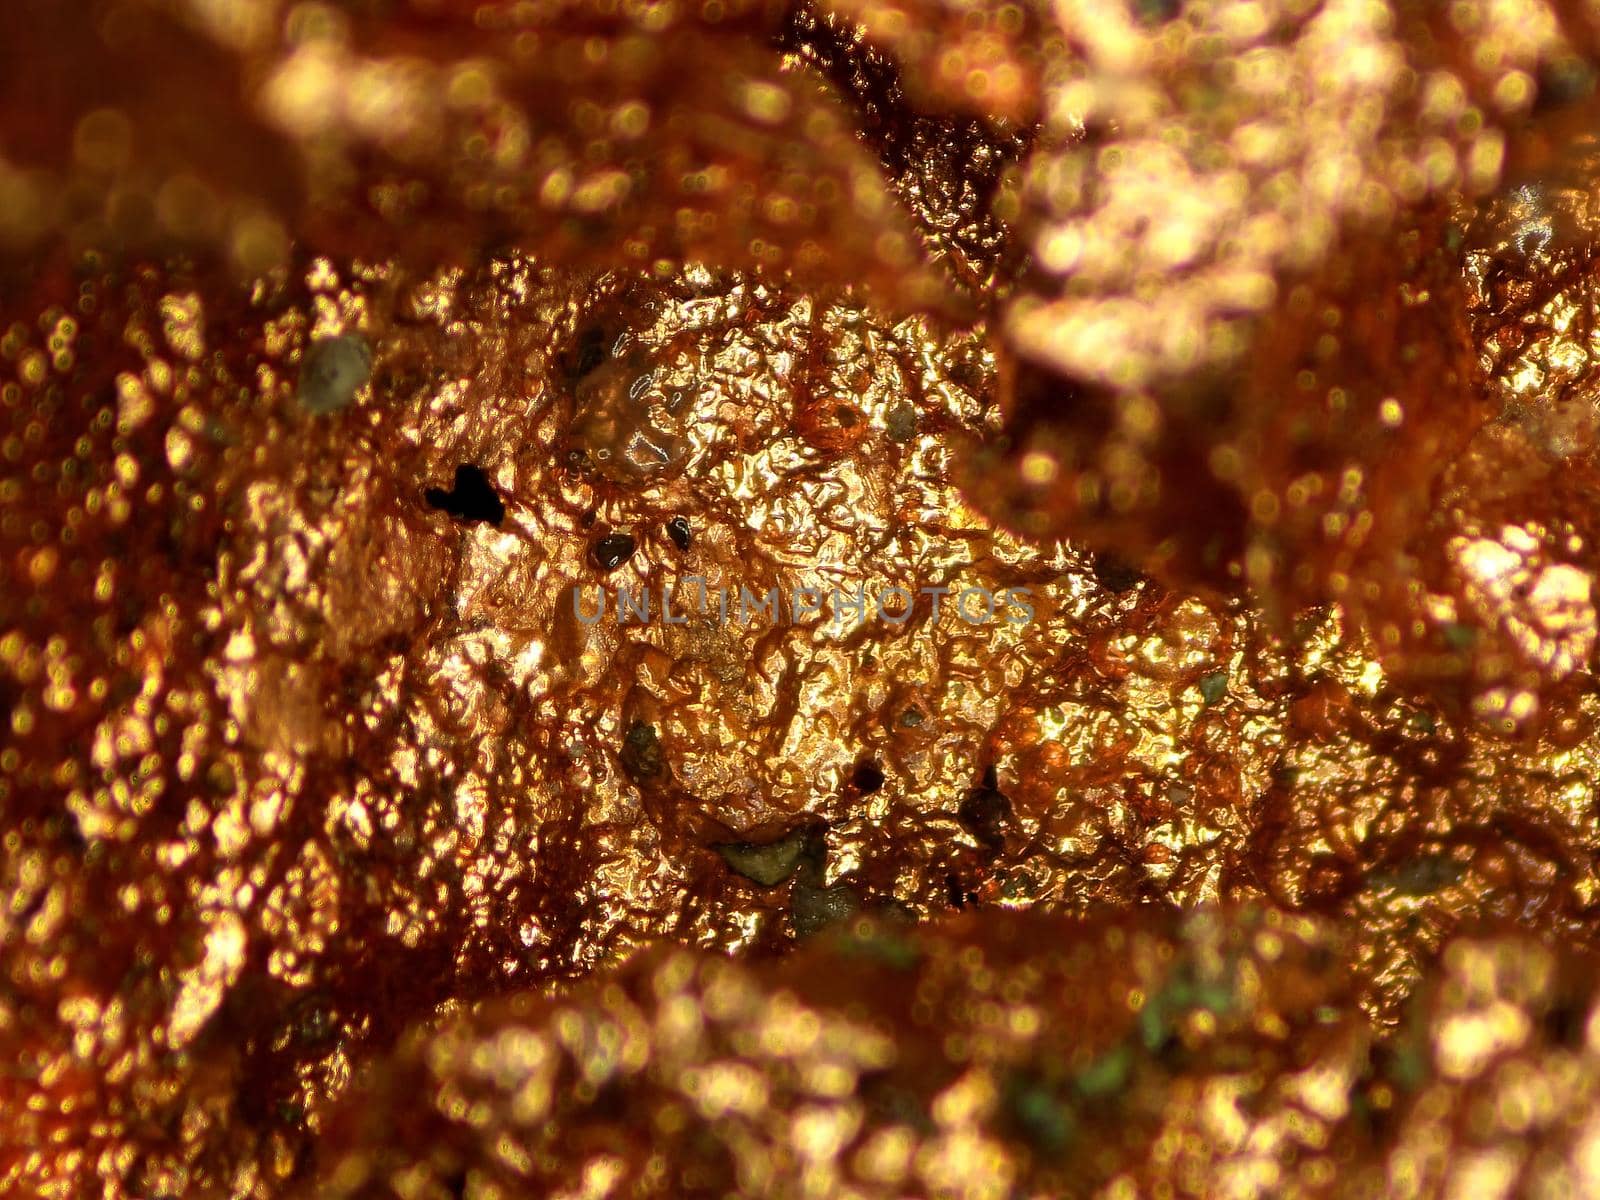 copper ore in a closeup by Jochen